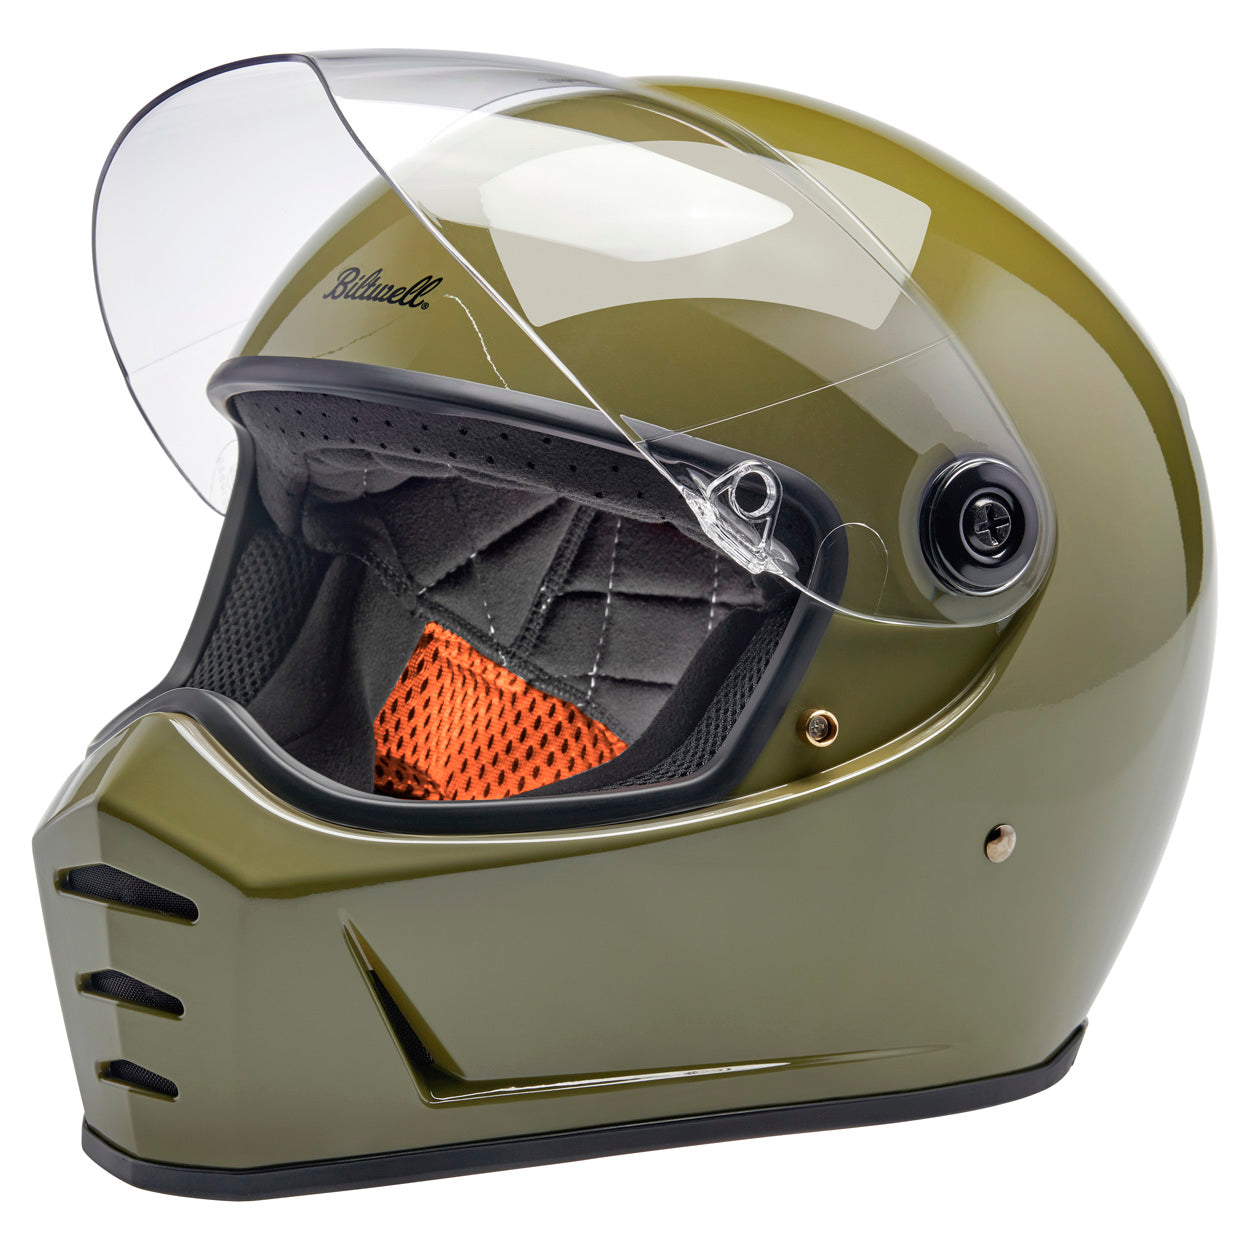 Lane Splitter ECE R22.06 Helmet - Gloss Olive Green